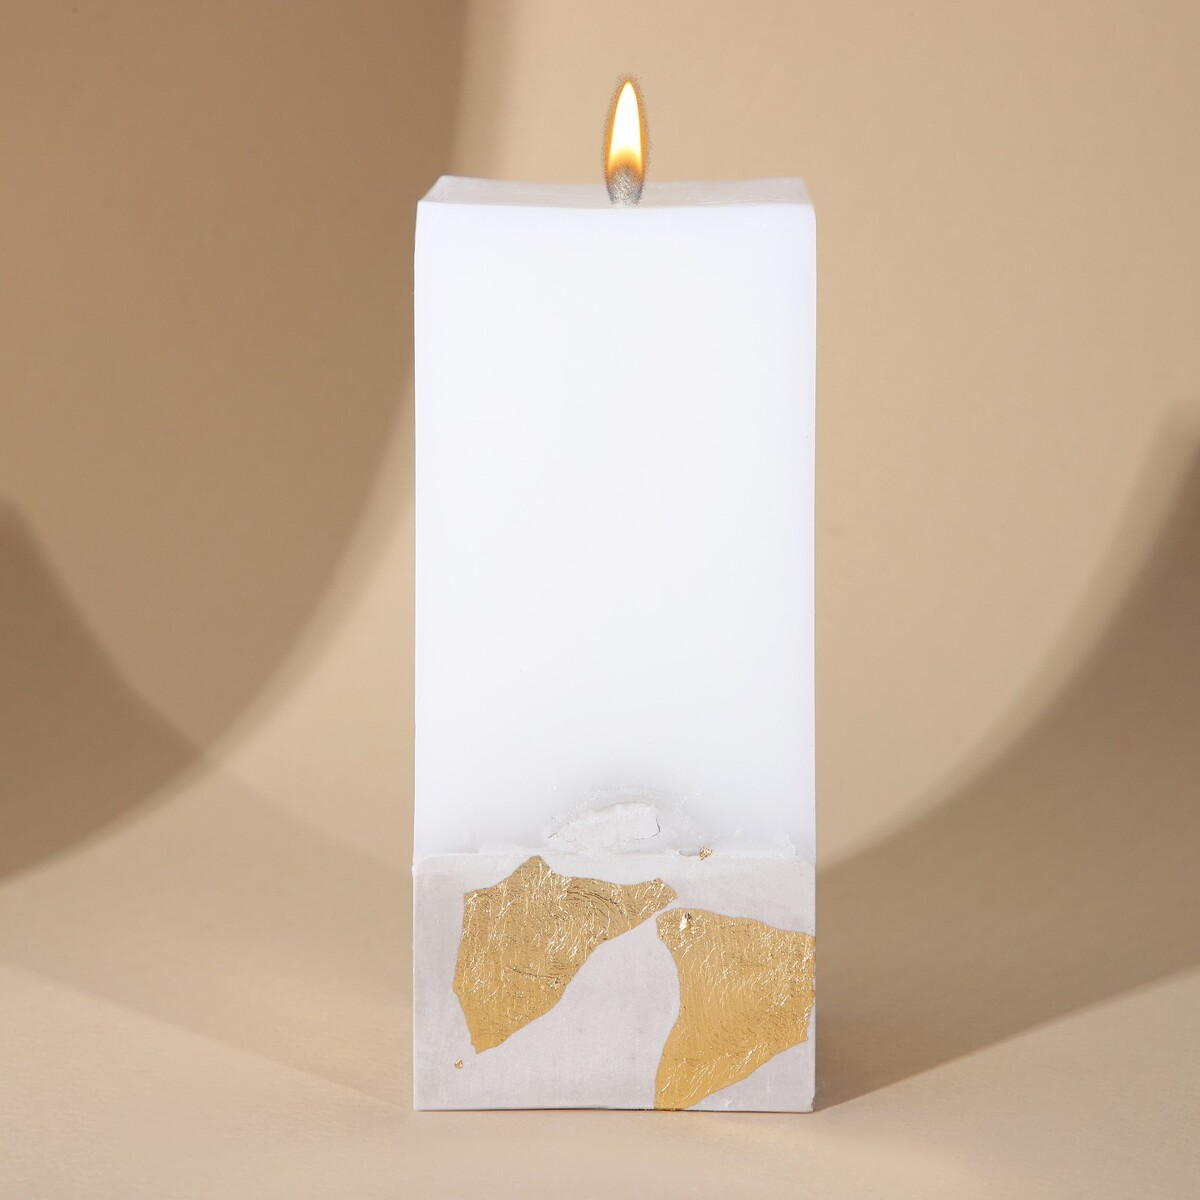 Свеча интерьерная белая с бетоном (поталь), 6 х 6 х 14 см свеча античная 2 2х26 см пальмовый воск белая 2 ч